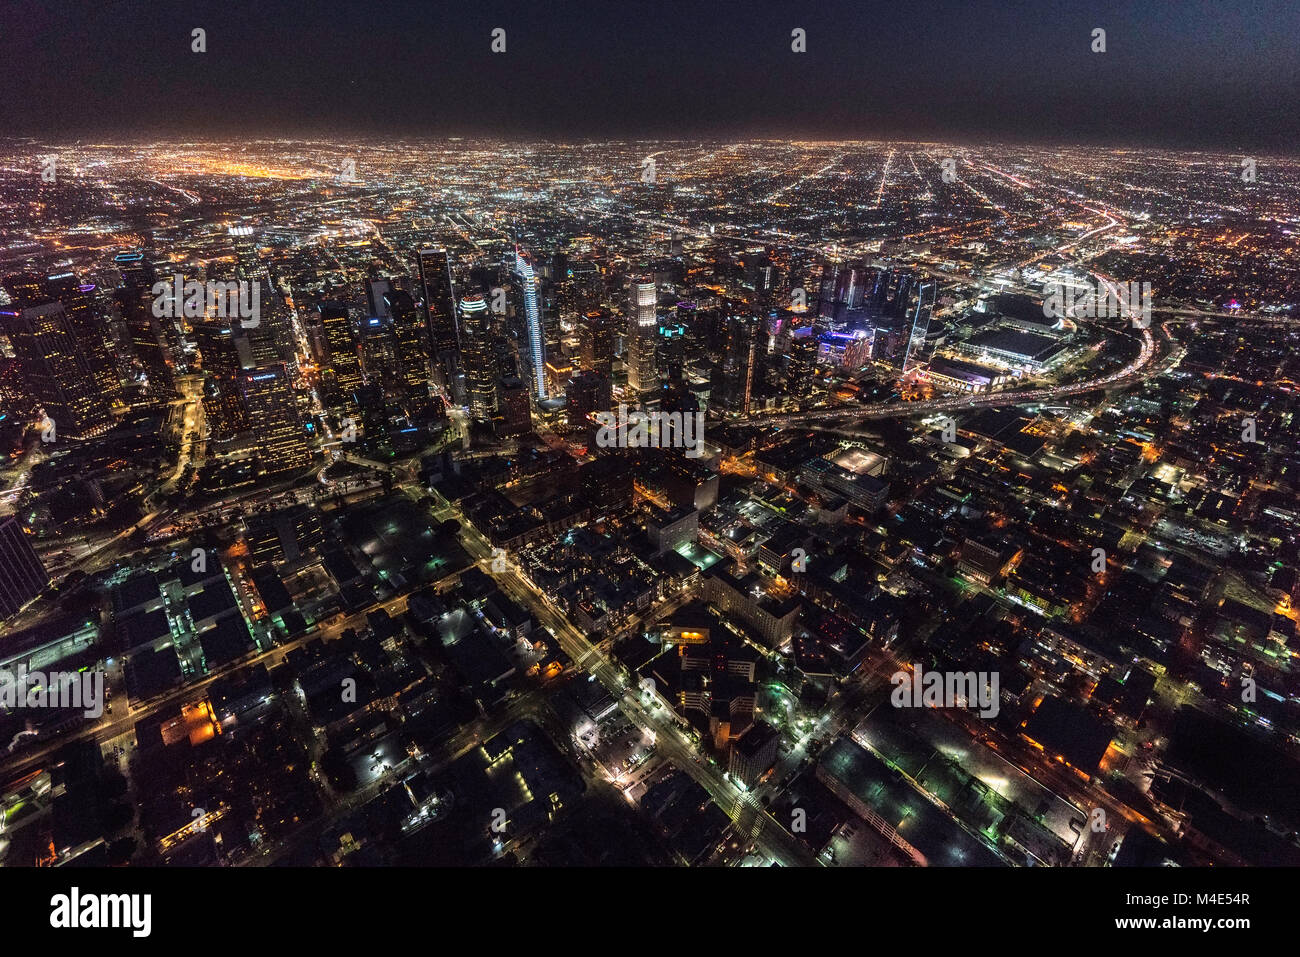 Los Angeles, Californie, USA - 11 Février 2018 : nuit vue aérienne des bâtiments et des rues au centre-ville de la ville. Banque D'Images